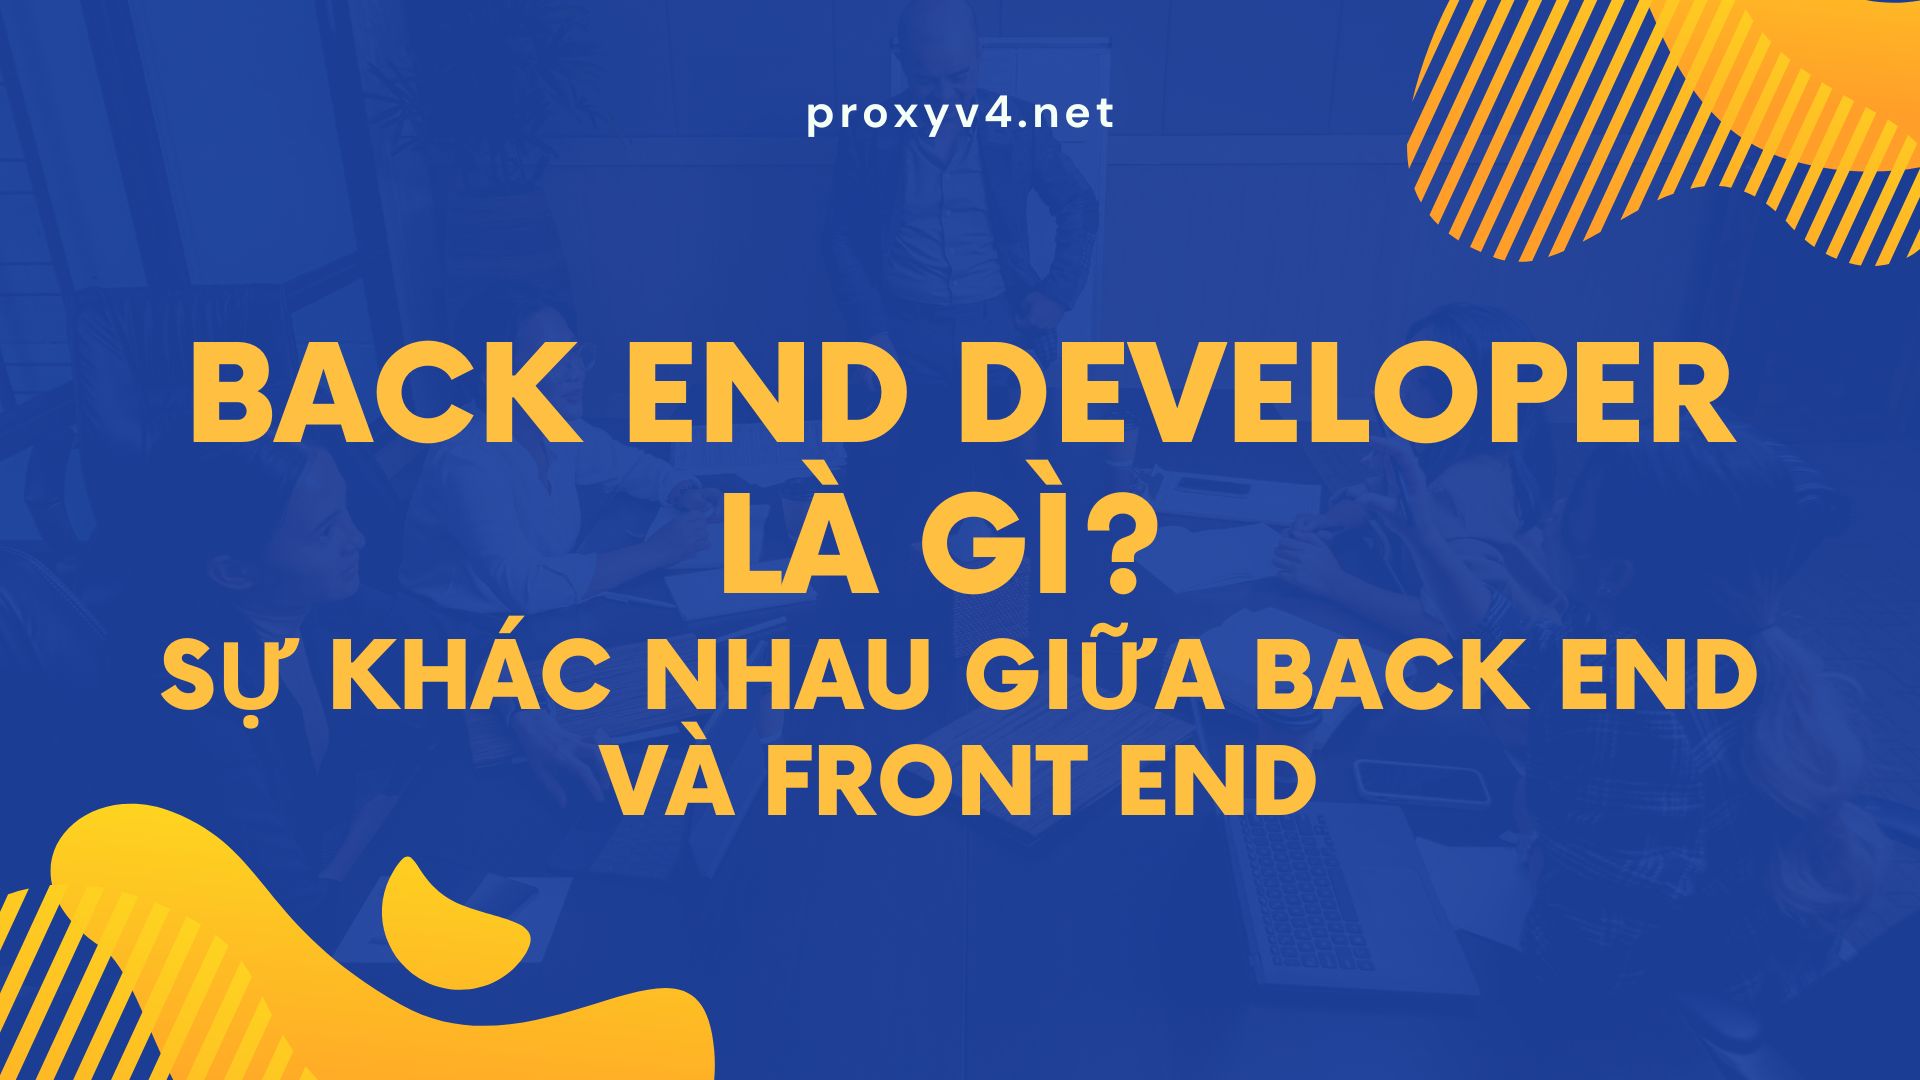 Back End Developer là gì? Sự khác nhau giữa back end và front end